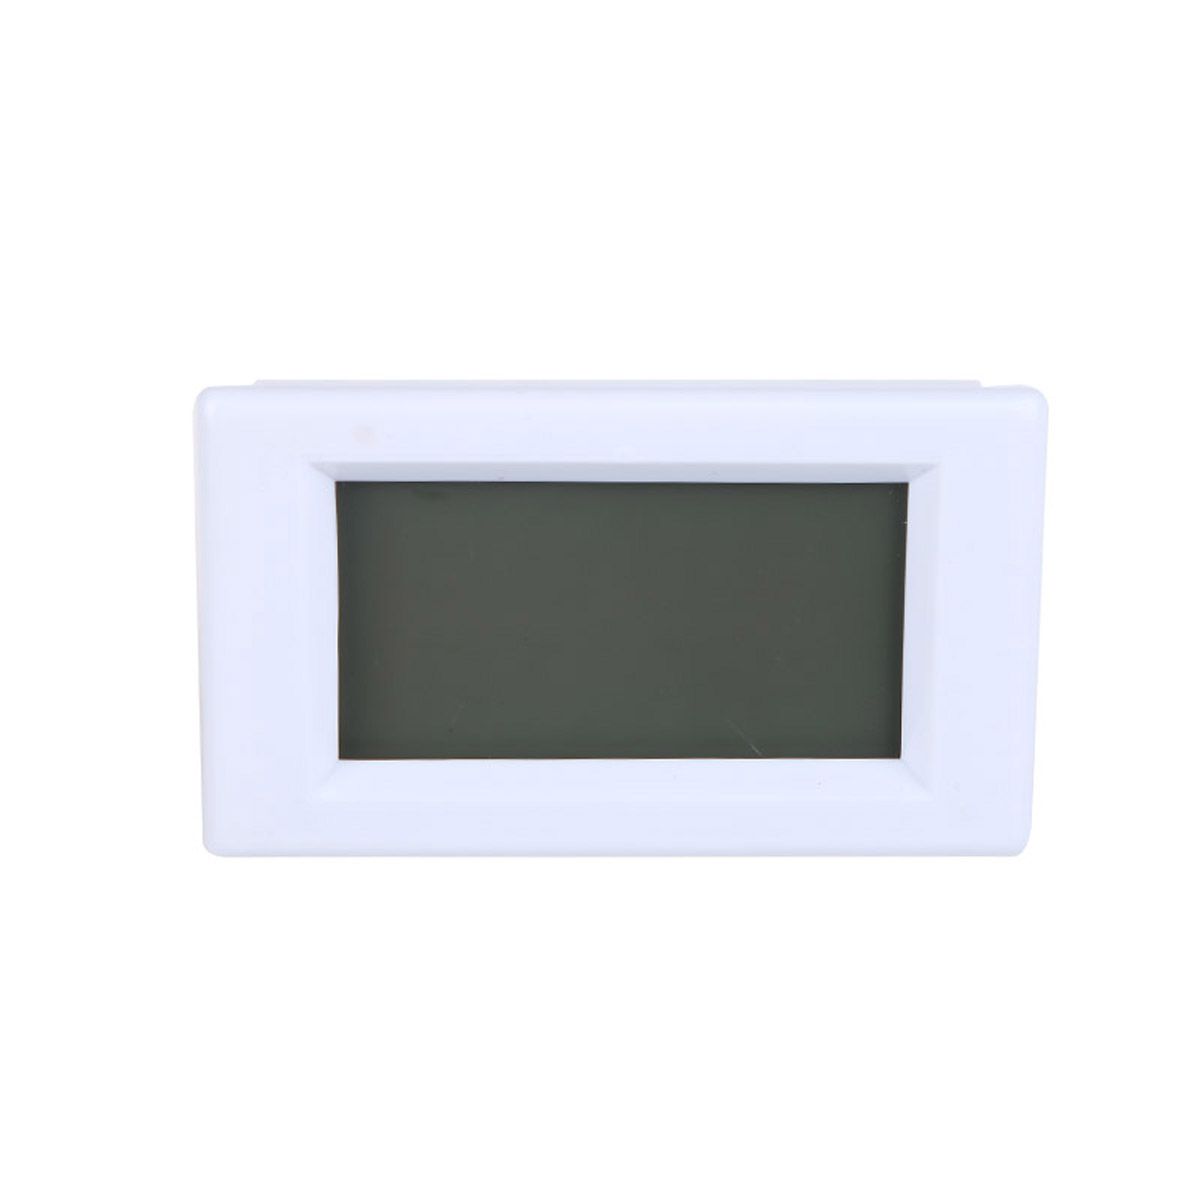 D85-2041-LCD-Display-Digital-AC100-300V-50A-Ammeter-Voltmeter-Meter-Tester-Amp-Panel-Meter-With-Blue-1443865-2